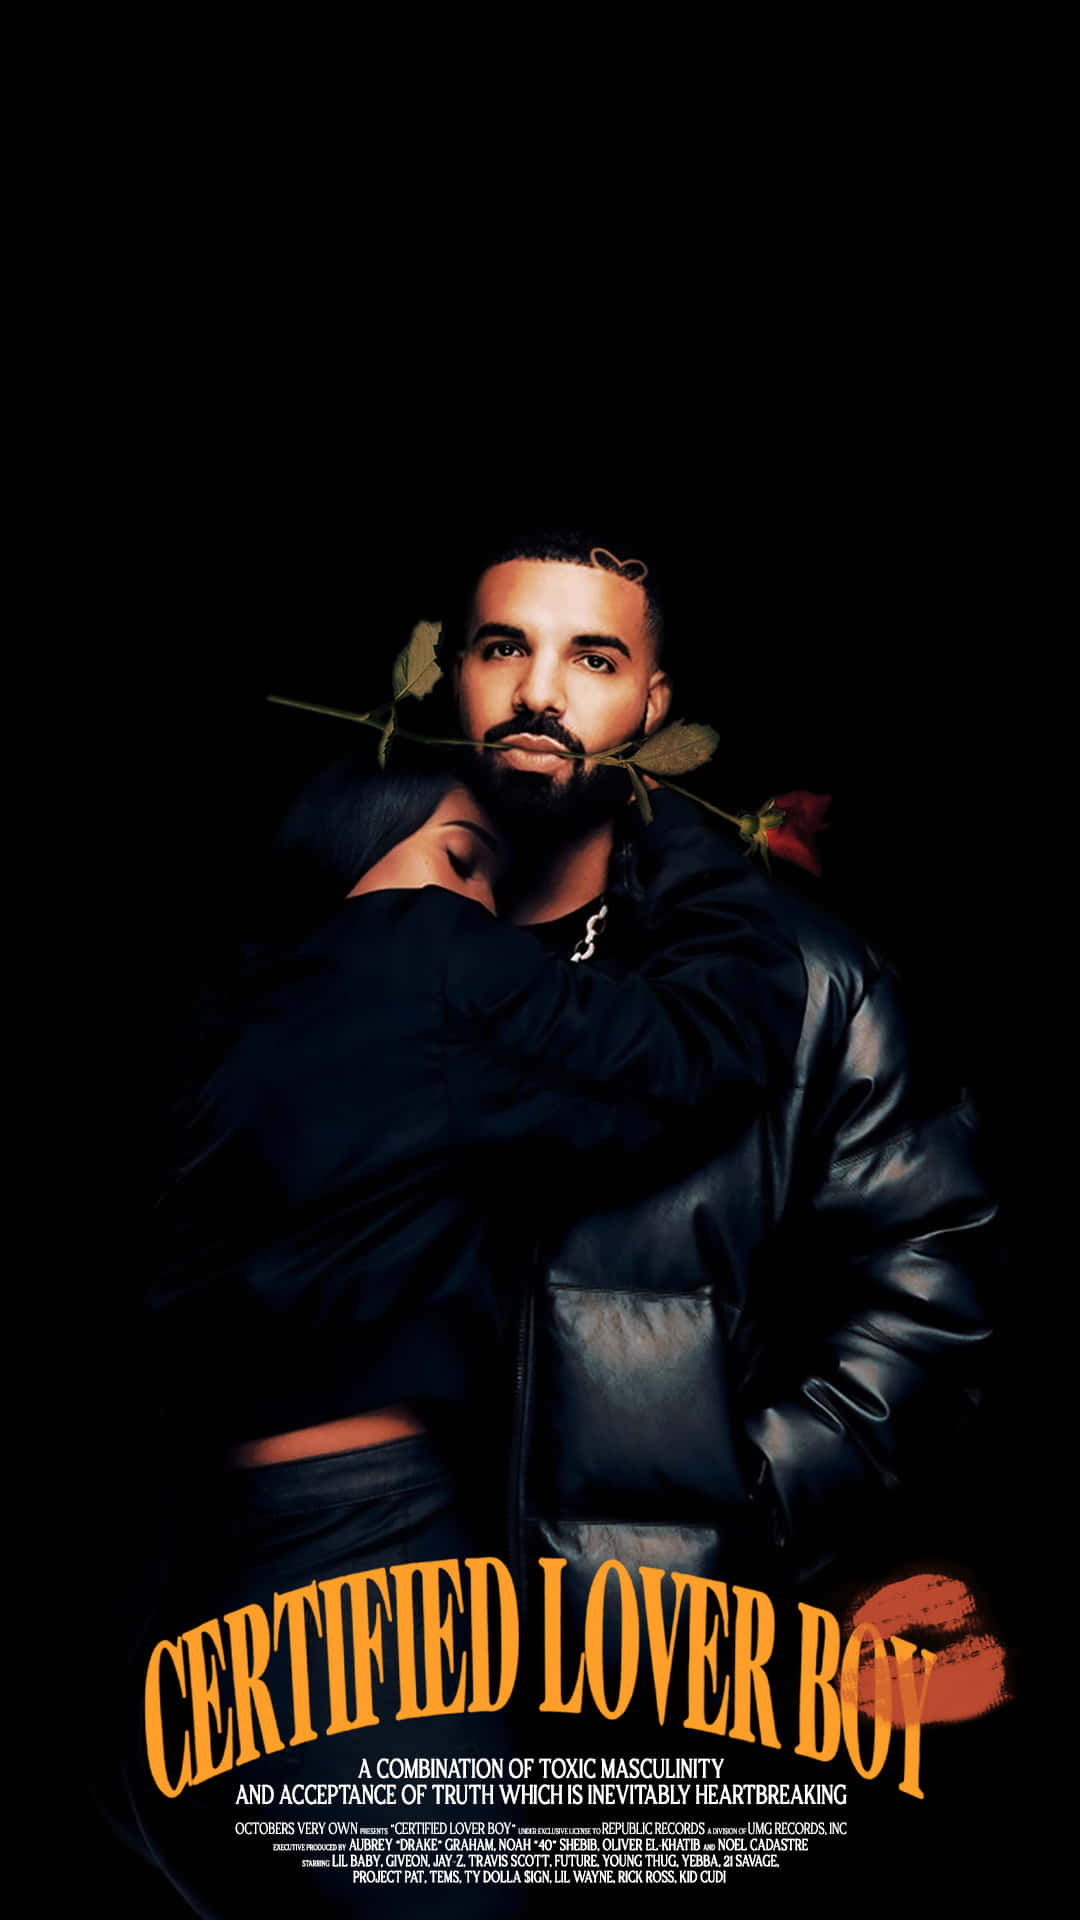 Aesthetic Drake Cover Wallpaper